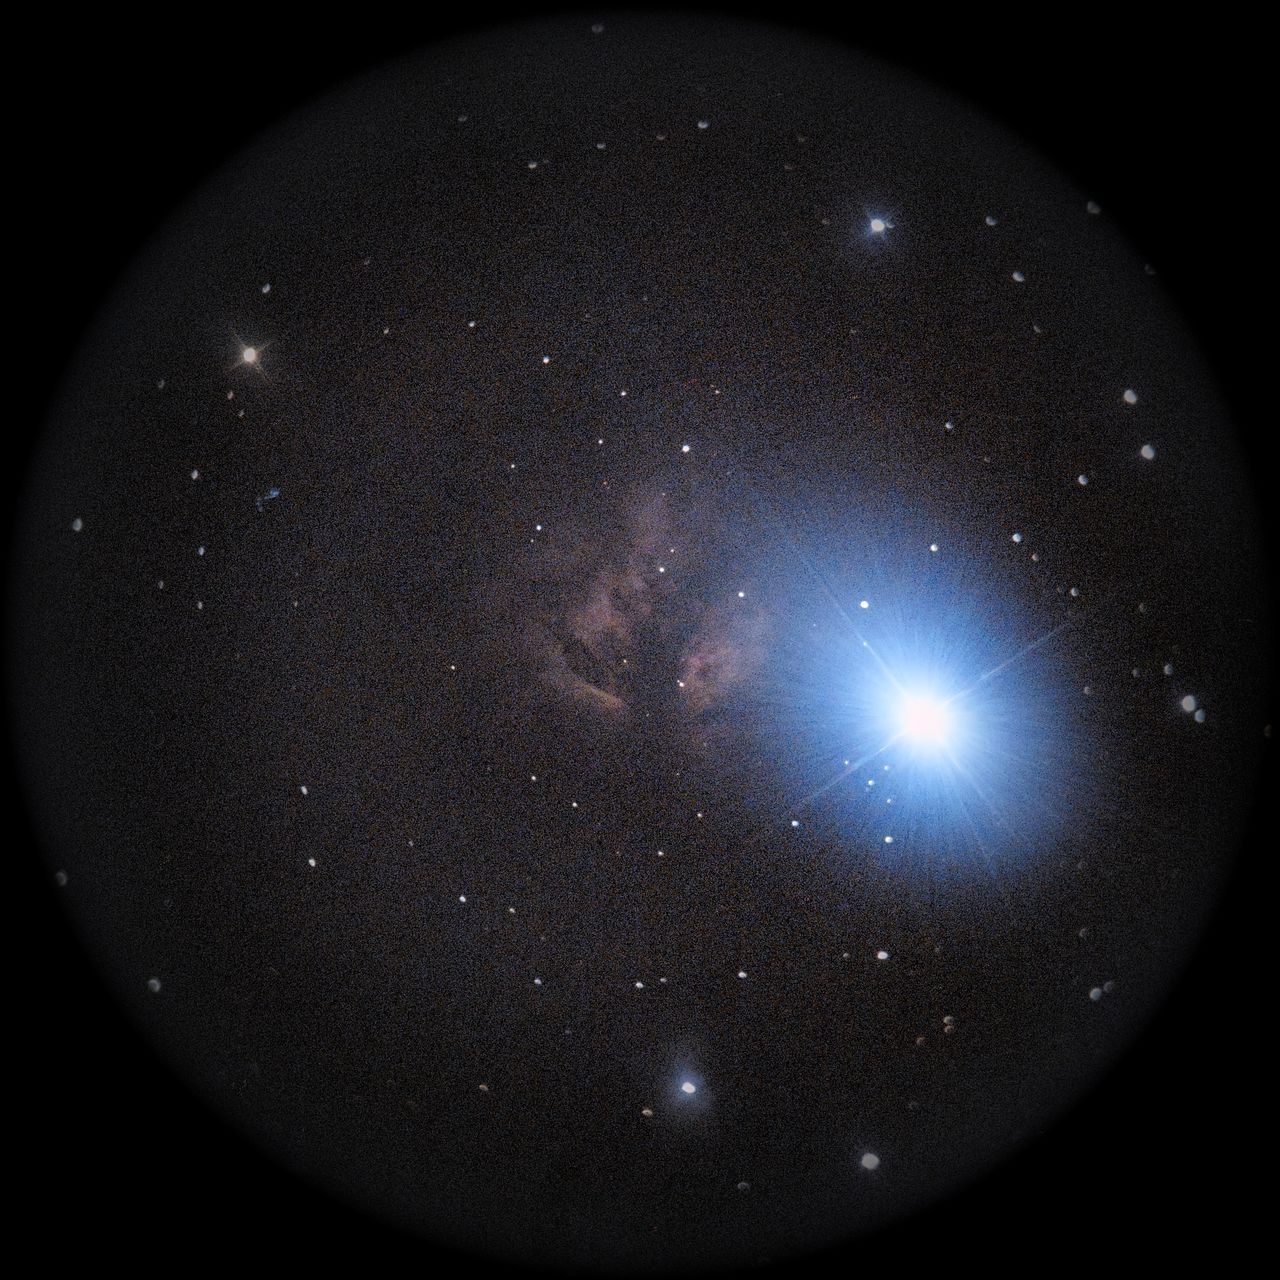 Image of NGC2024